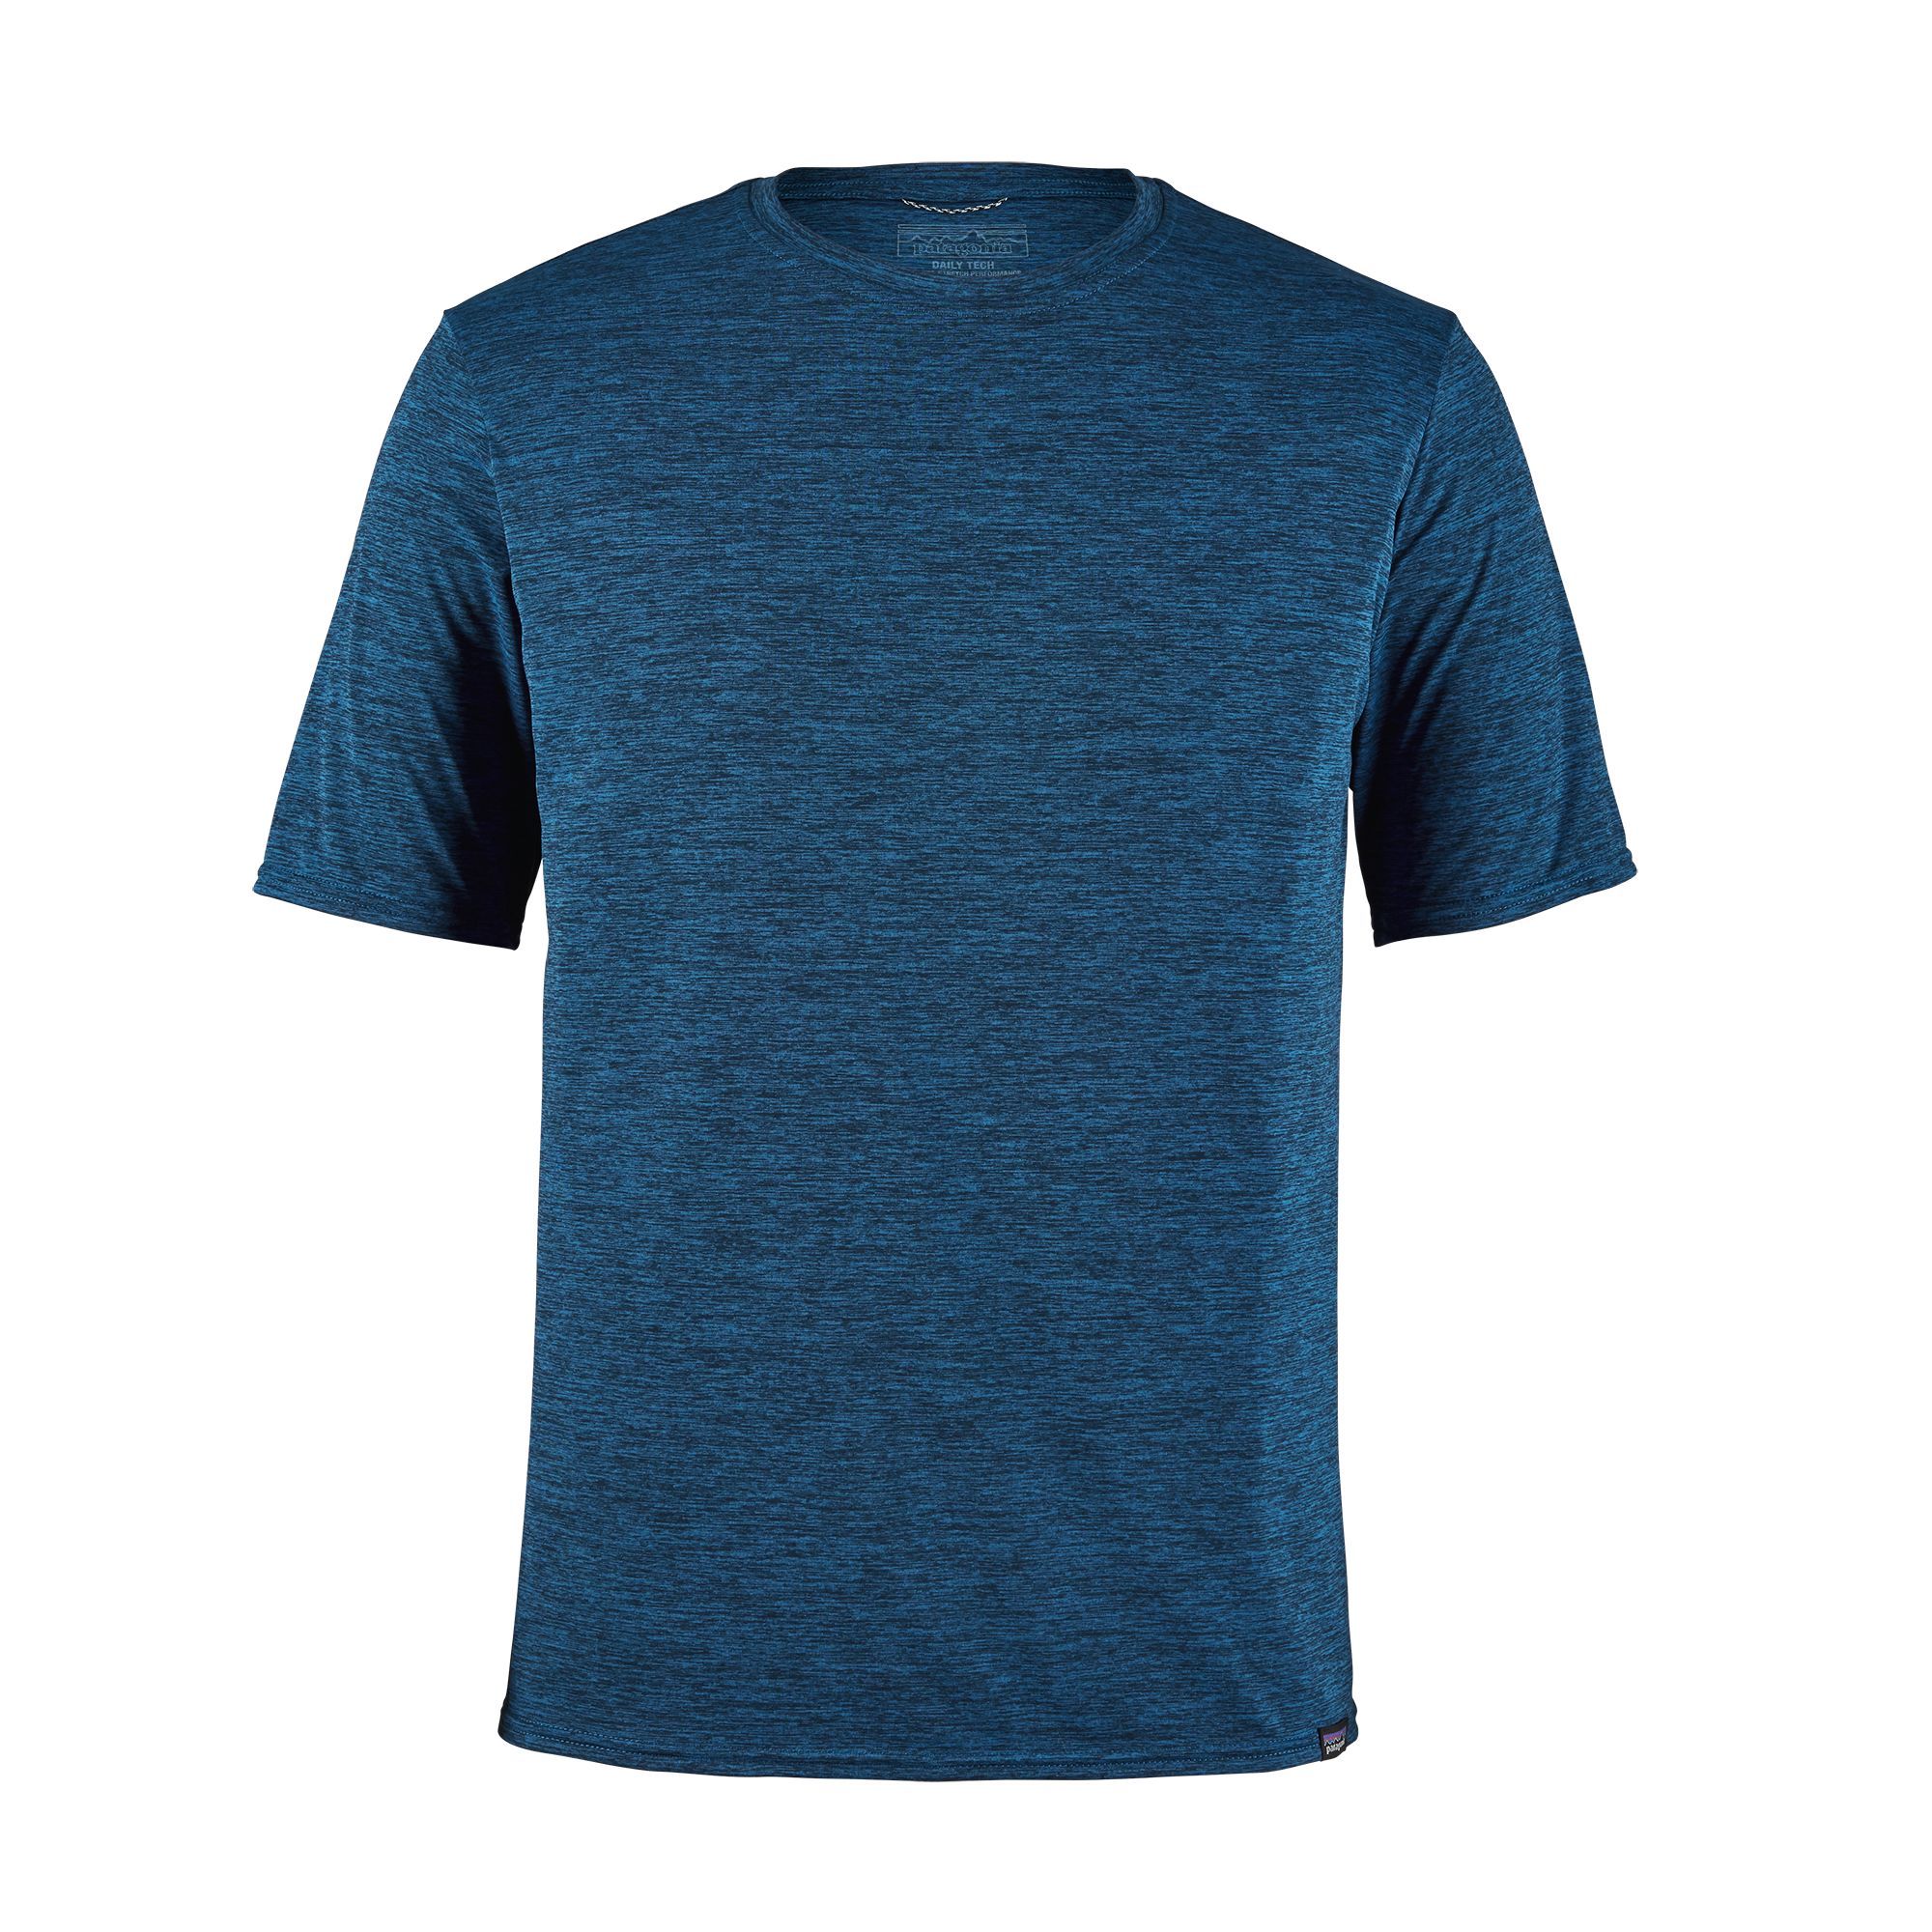 T-shirt Men's Capilene Cool Daily Shirt Bleu